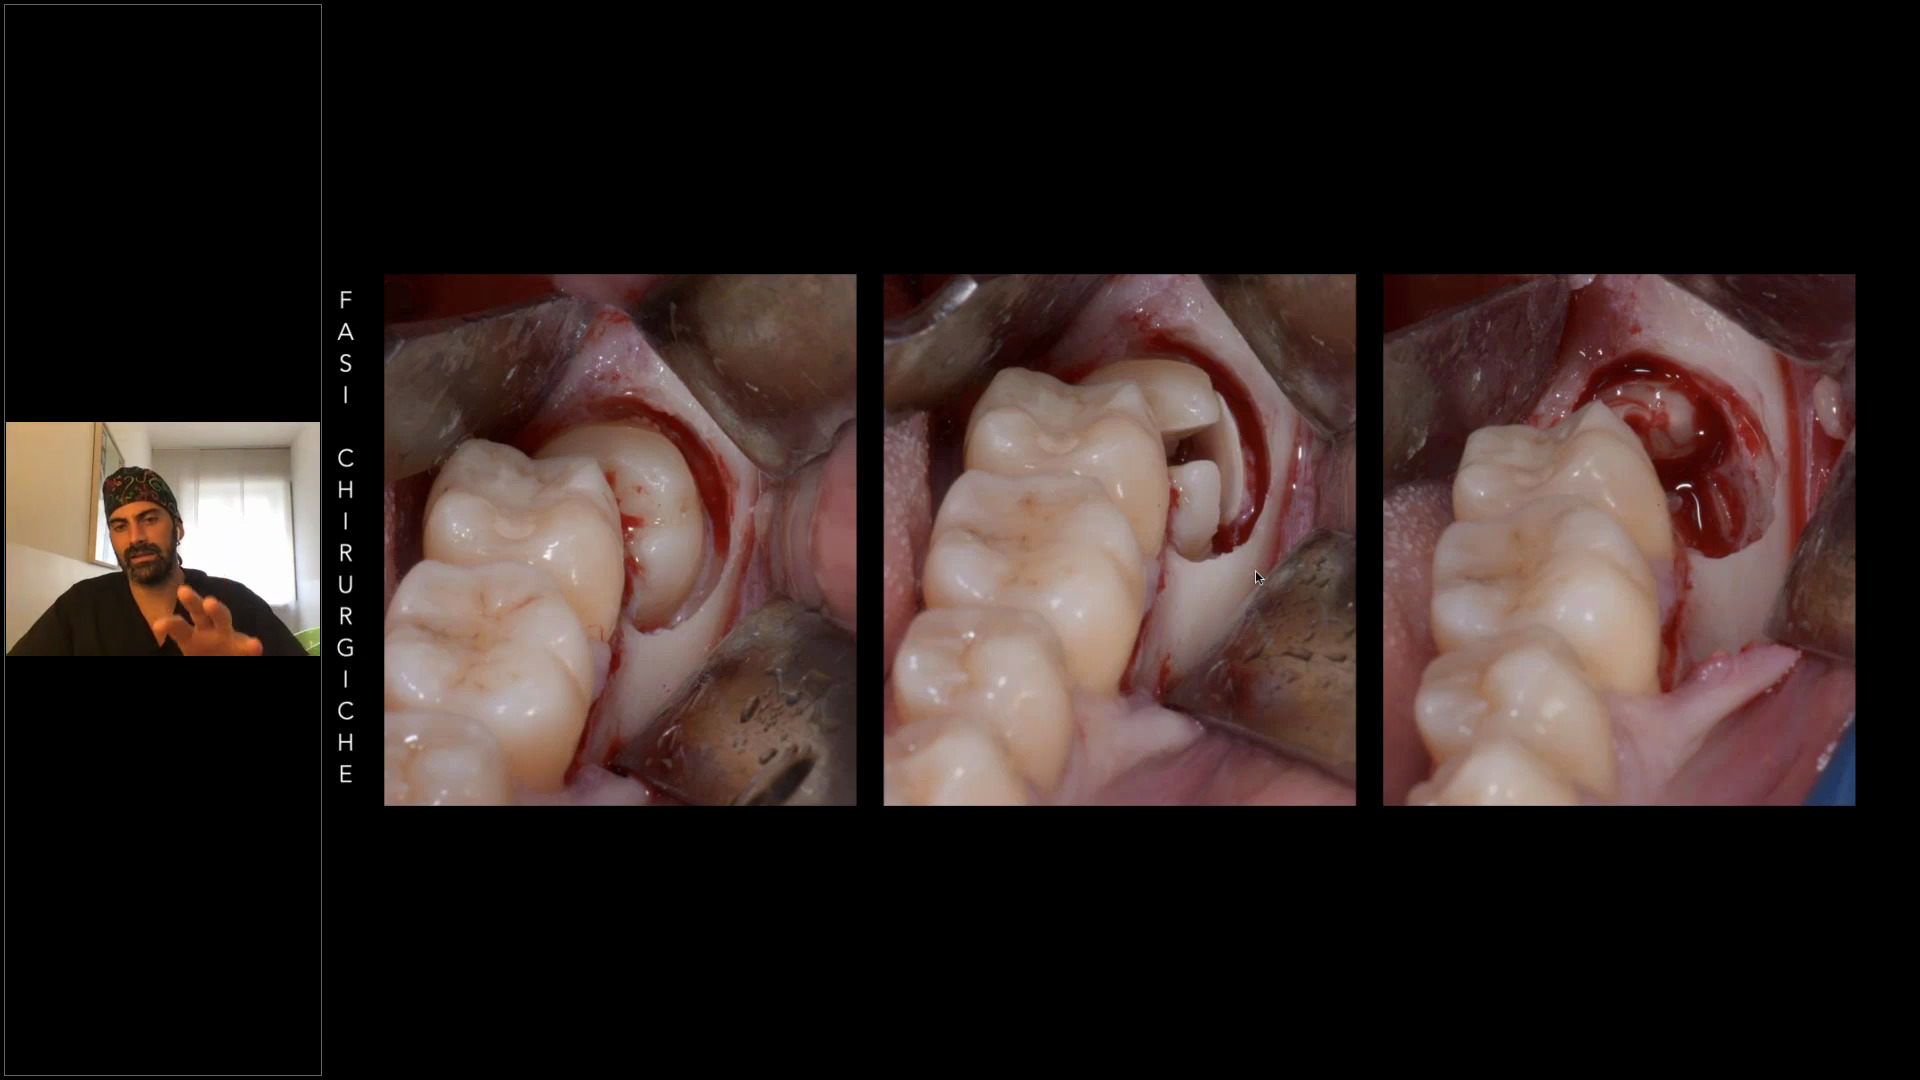 L’estrazione del terzo molare inferiore: l’utilizzo del microscopio operatorio in chirurgia orale 